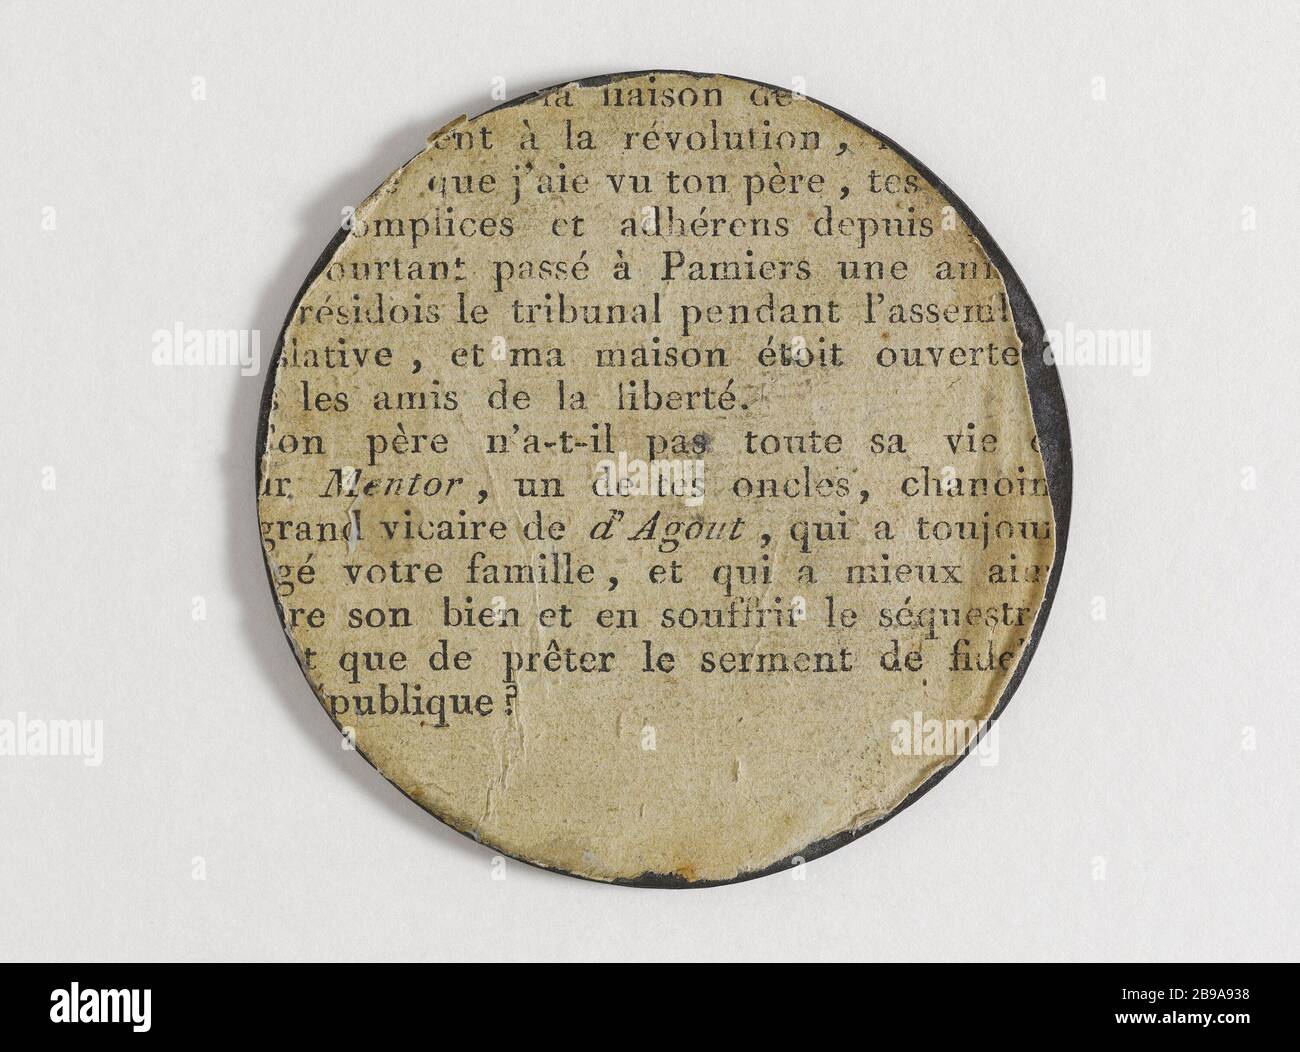 FALL OF THE MONARCHY 'Chute de la monarchie'. Etain. 10 août 1792. Paris, musée Carnavalet. Stock Photo